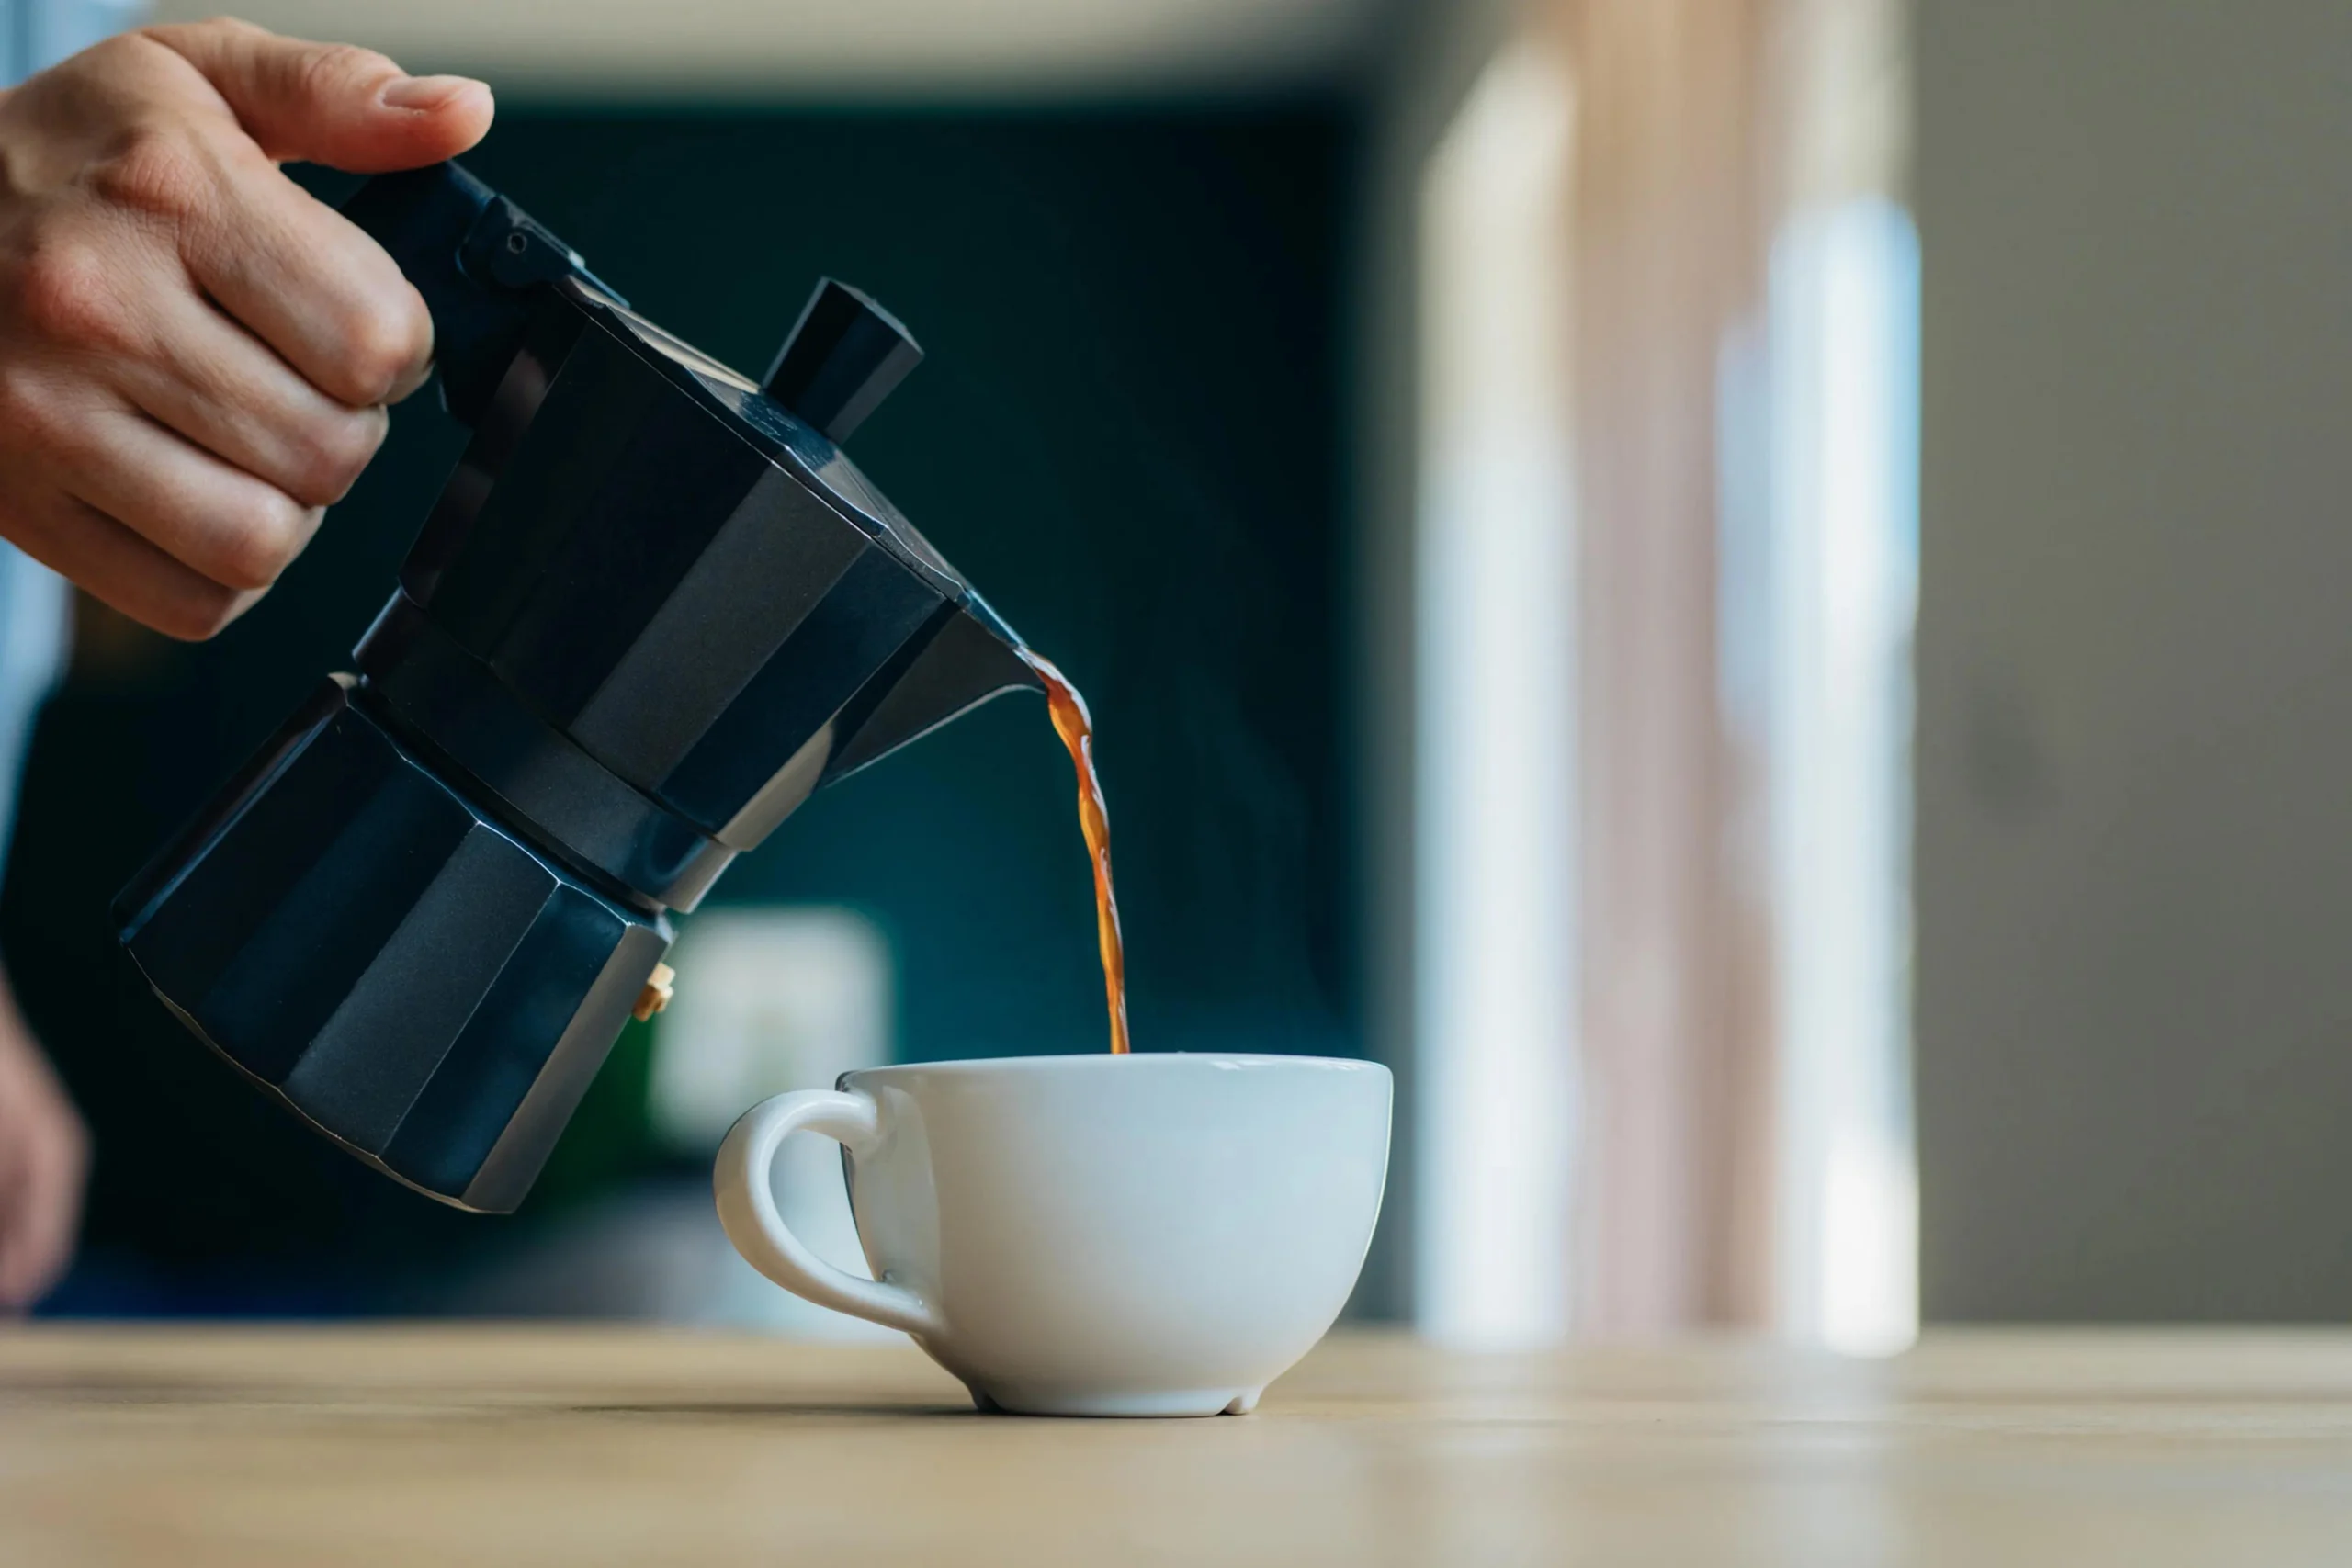 el cafe descafeinado sube el azucar - Cuántas tazas de café descafeinado puede tomar un diabetico